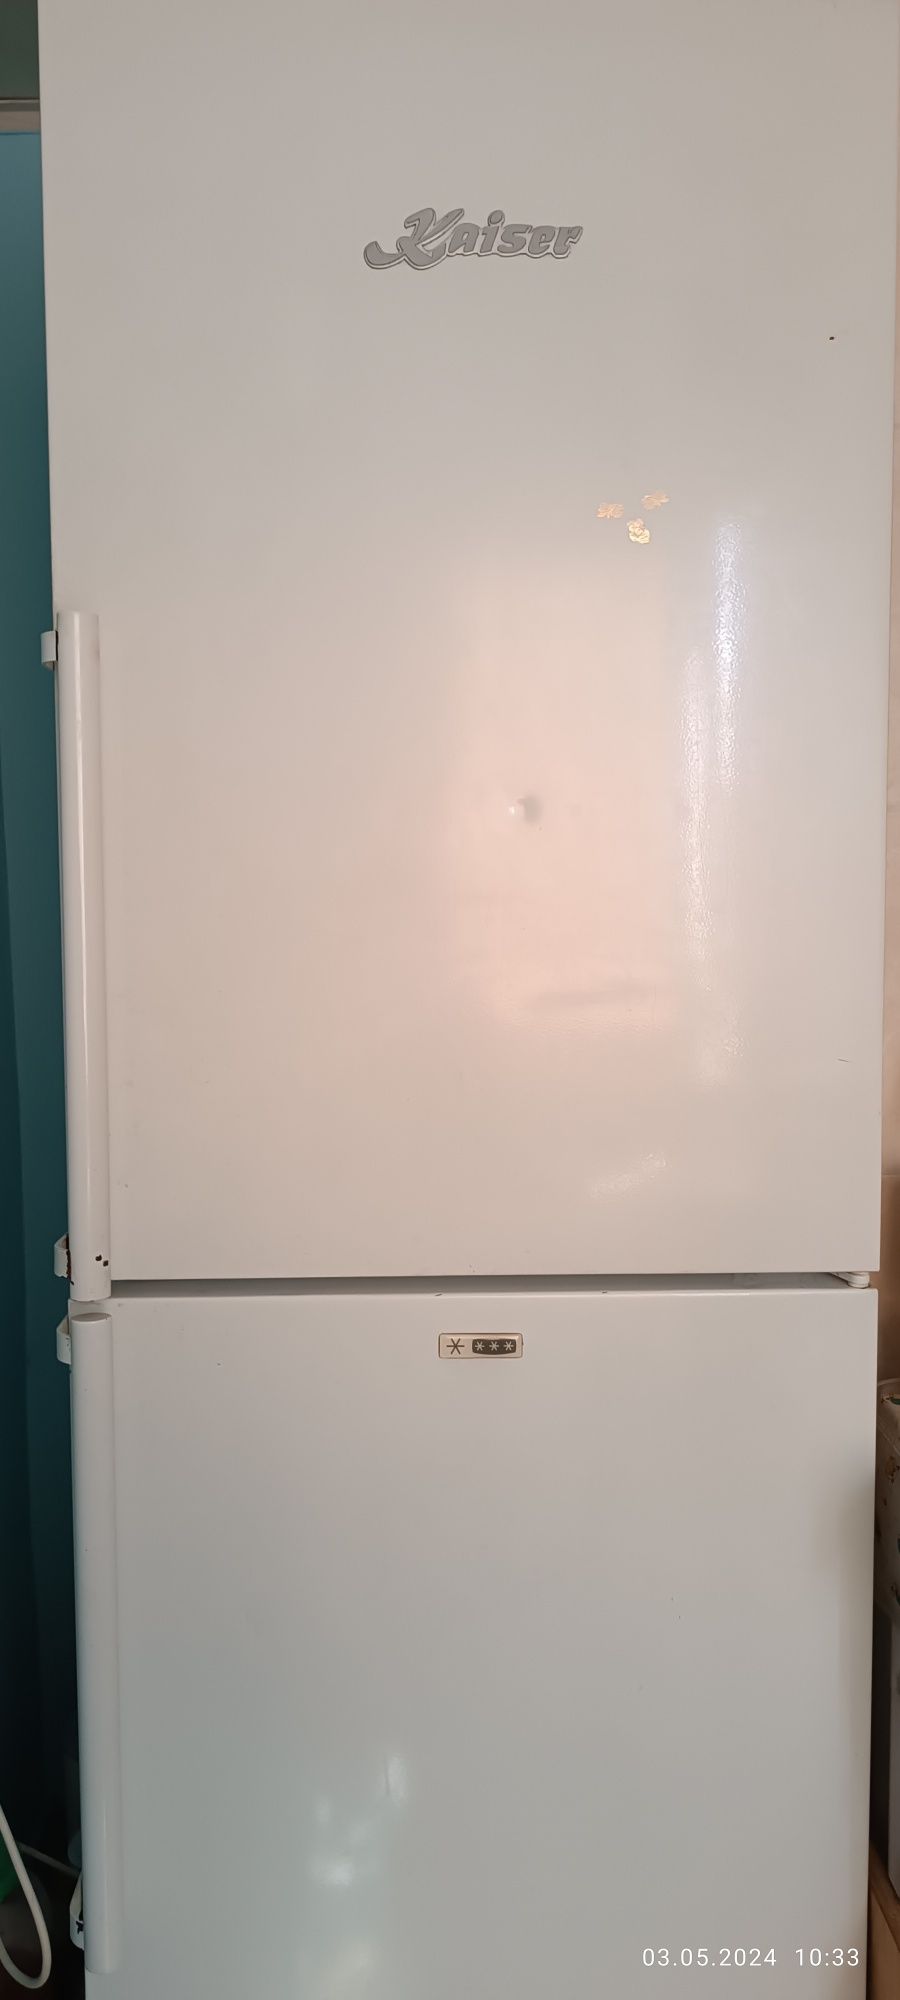 Kaiser Холодильник срочно